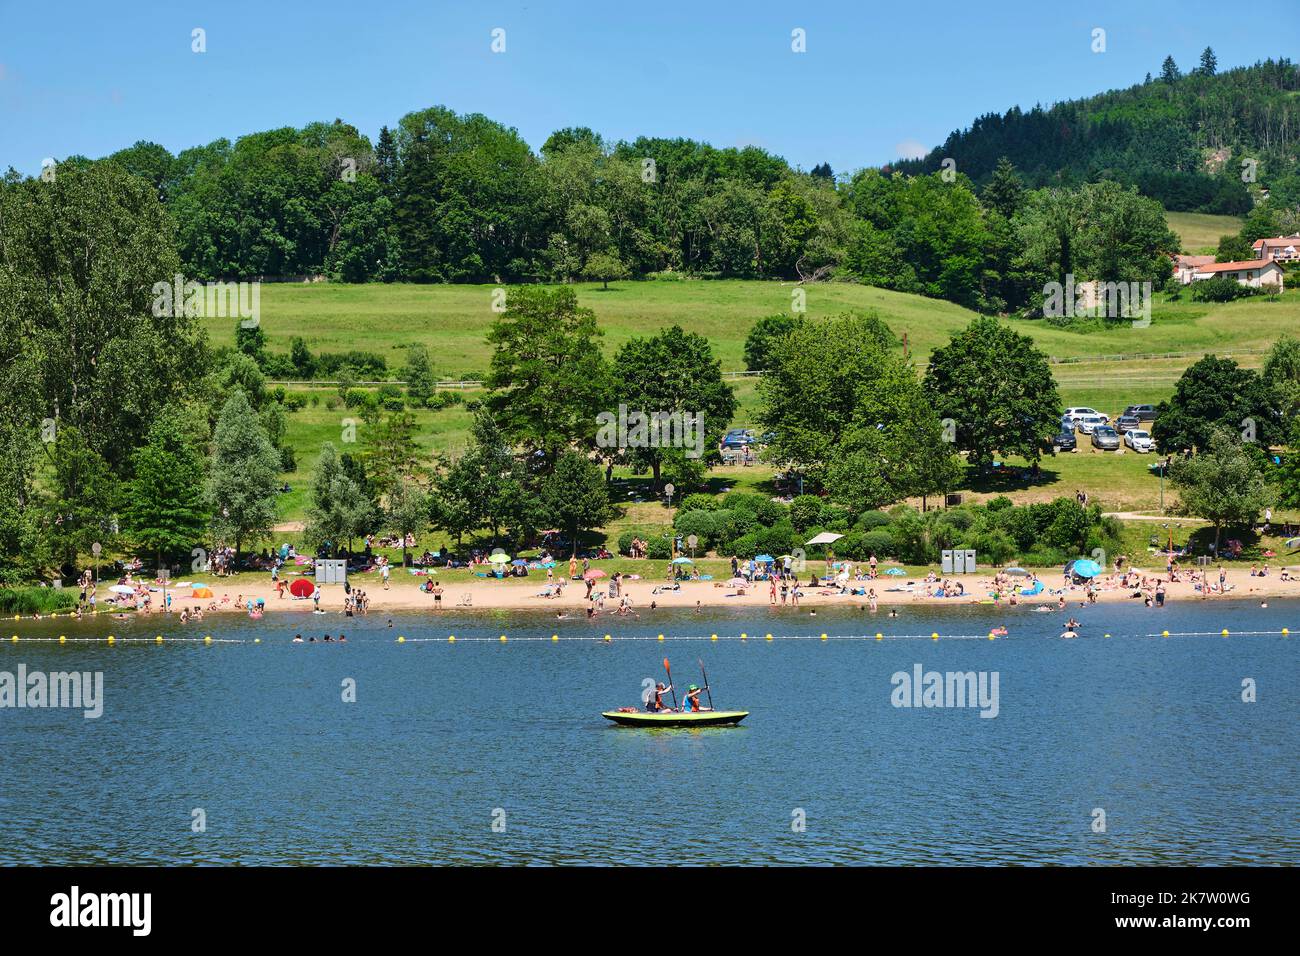 Cublize (Francia centro-orientale): lago "lac des sapins", parco ricreativo con spiaggia e zona piscina sorvegliata. Canoa a due posti sul lago Foto Stock